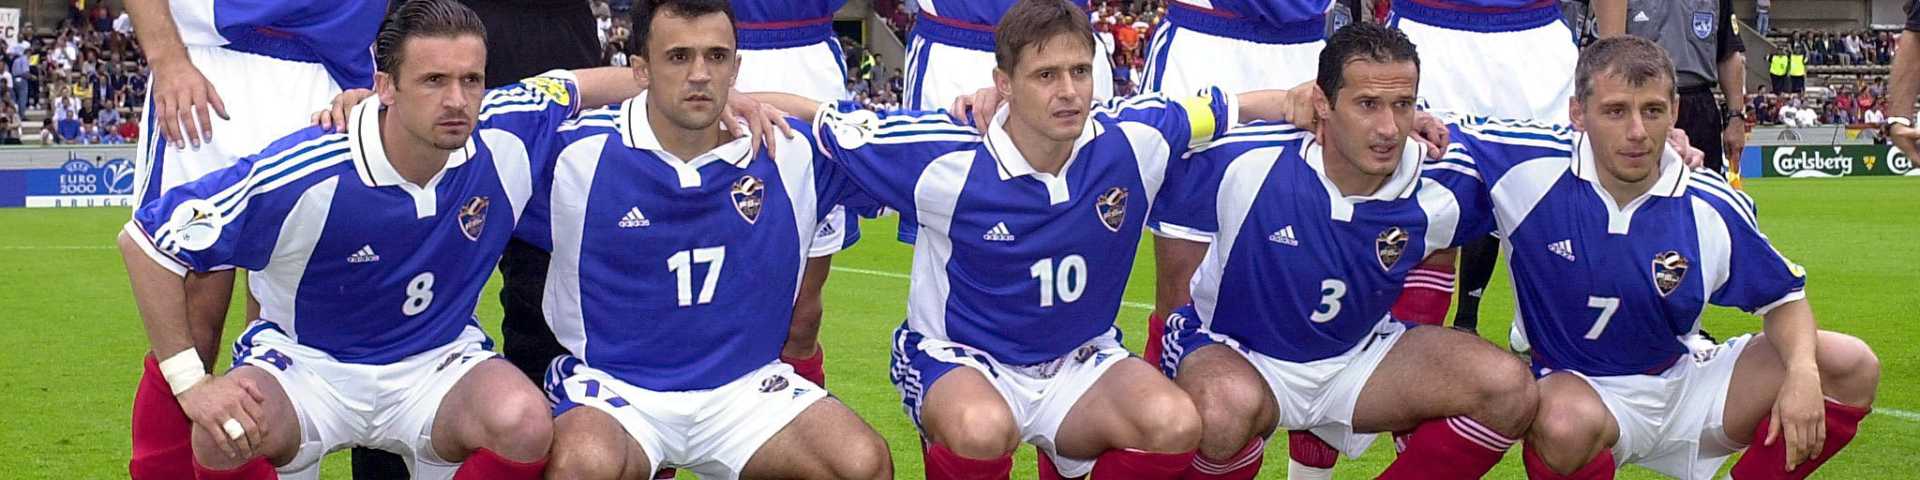 Фудбалска репрезентација Југославије на Европским првенствима: Од блиставих почетака до санкција и катастрофа